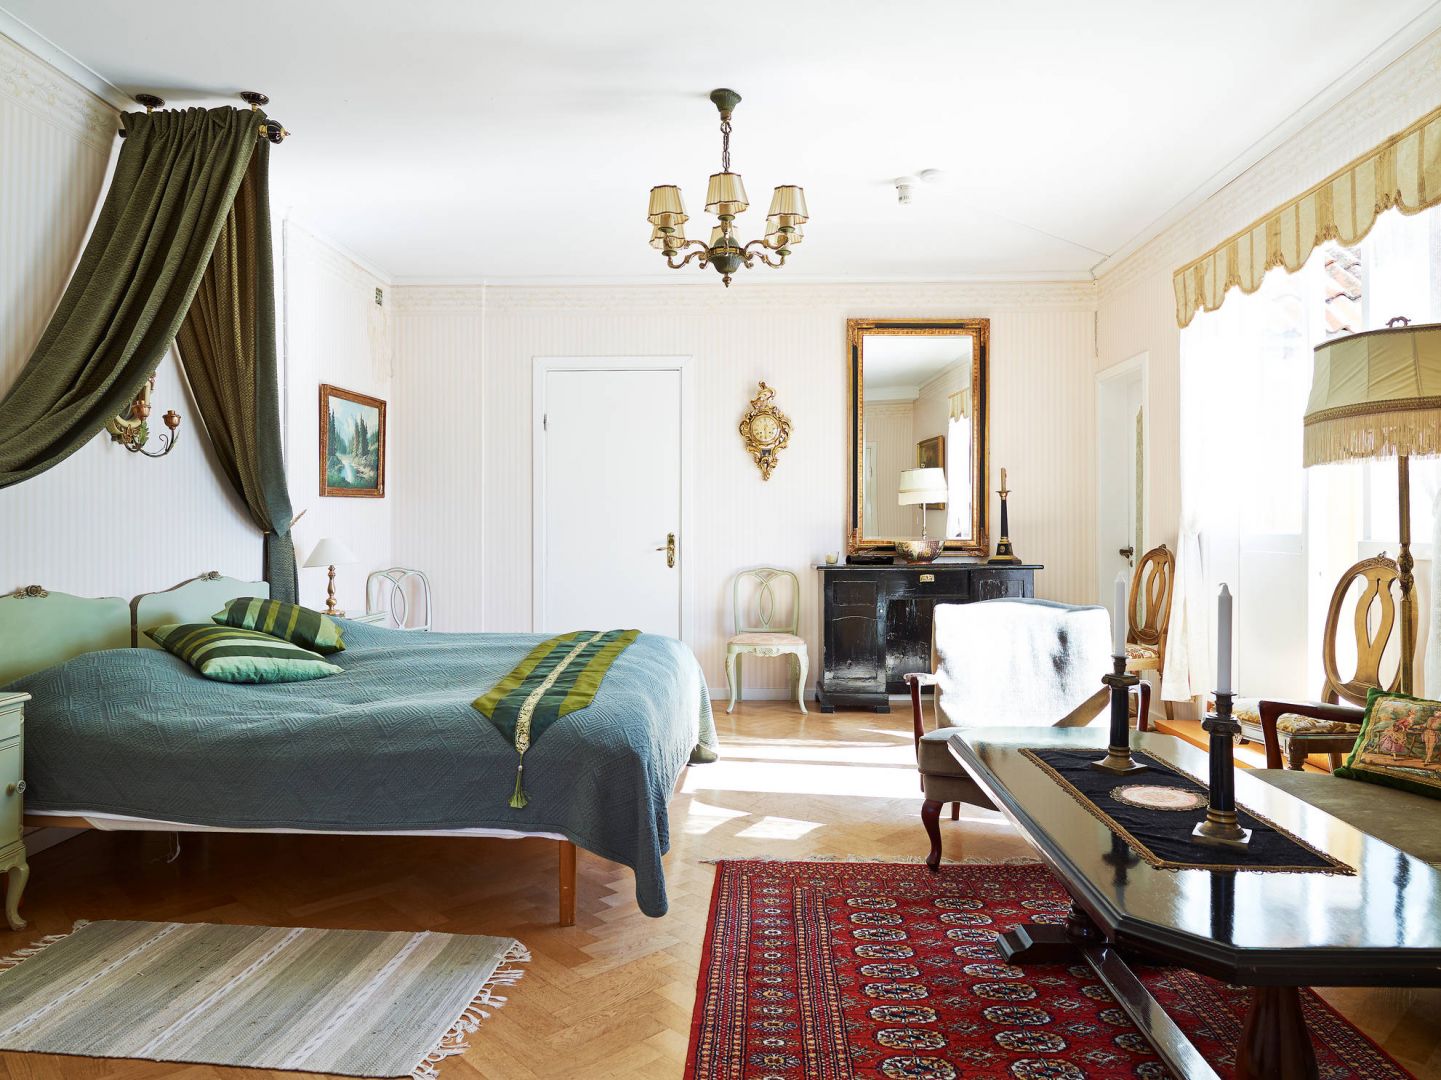 Skandynawski styl uwielbia starocie, dlatego też lepiej w sypialni urządzonej w tym stylu sprawdzą się meble i dodatki z targu ze starociami niż ze sklepu. Fot. Standshem